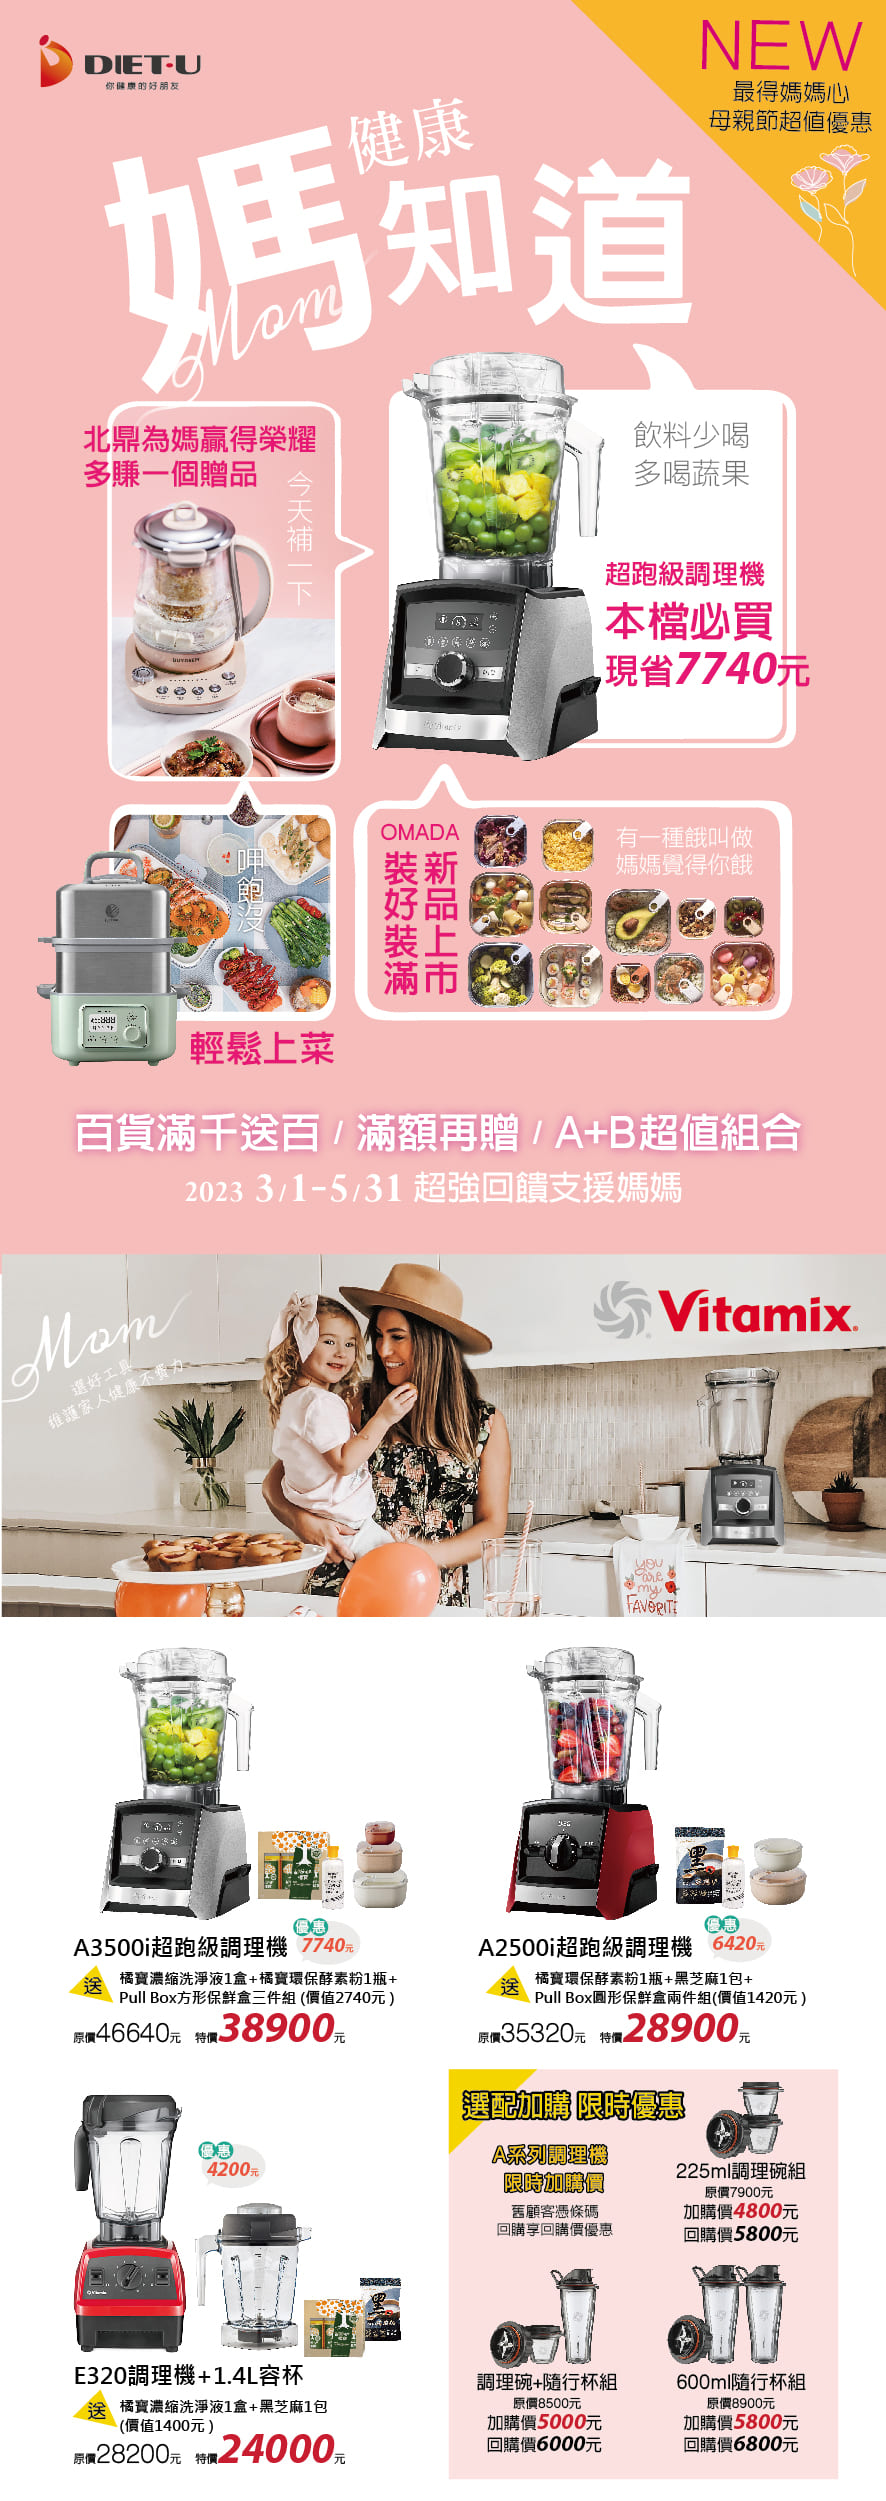 2023-百貨公司-周年慶-母親節-Vitamix-A3500i-A2500i-E320-調理機-粉漾壺-活水機-限時組合-陳月卿分享會